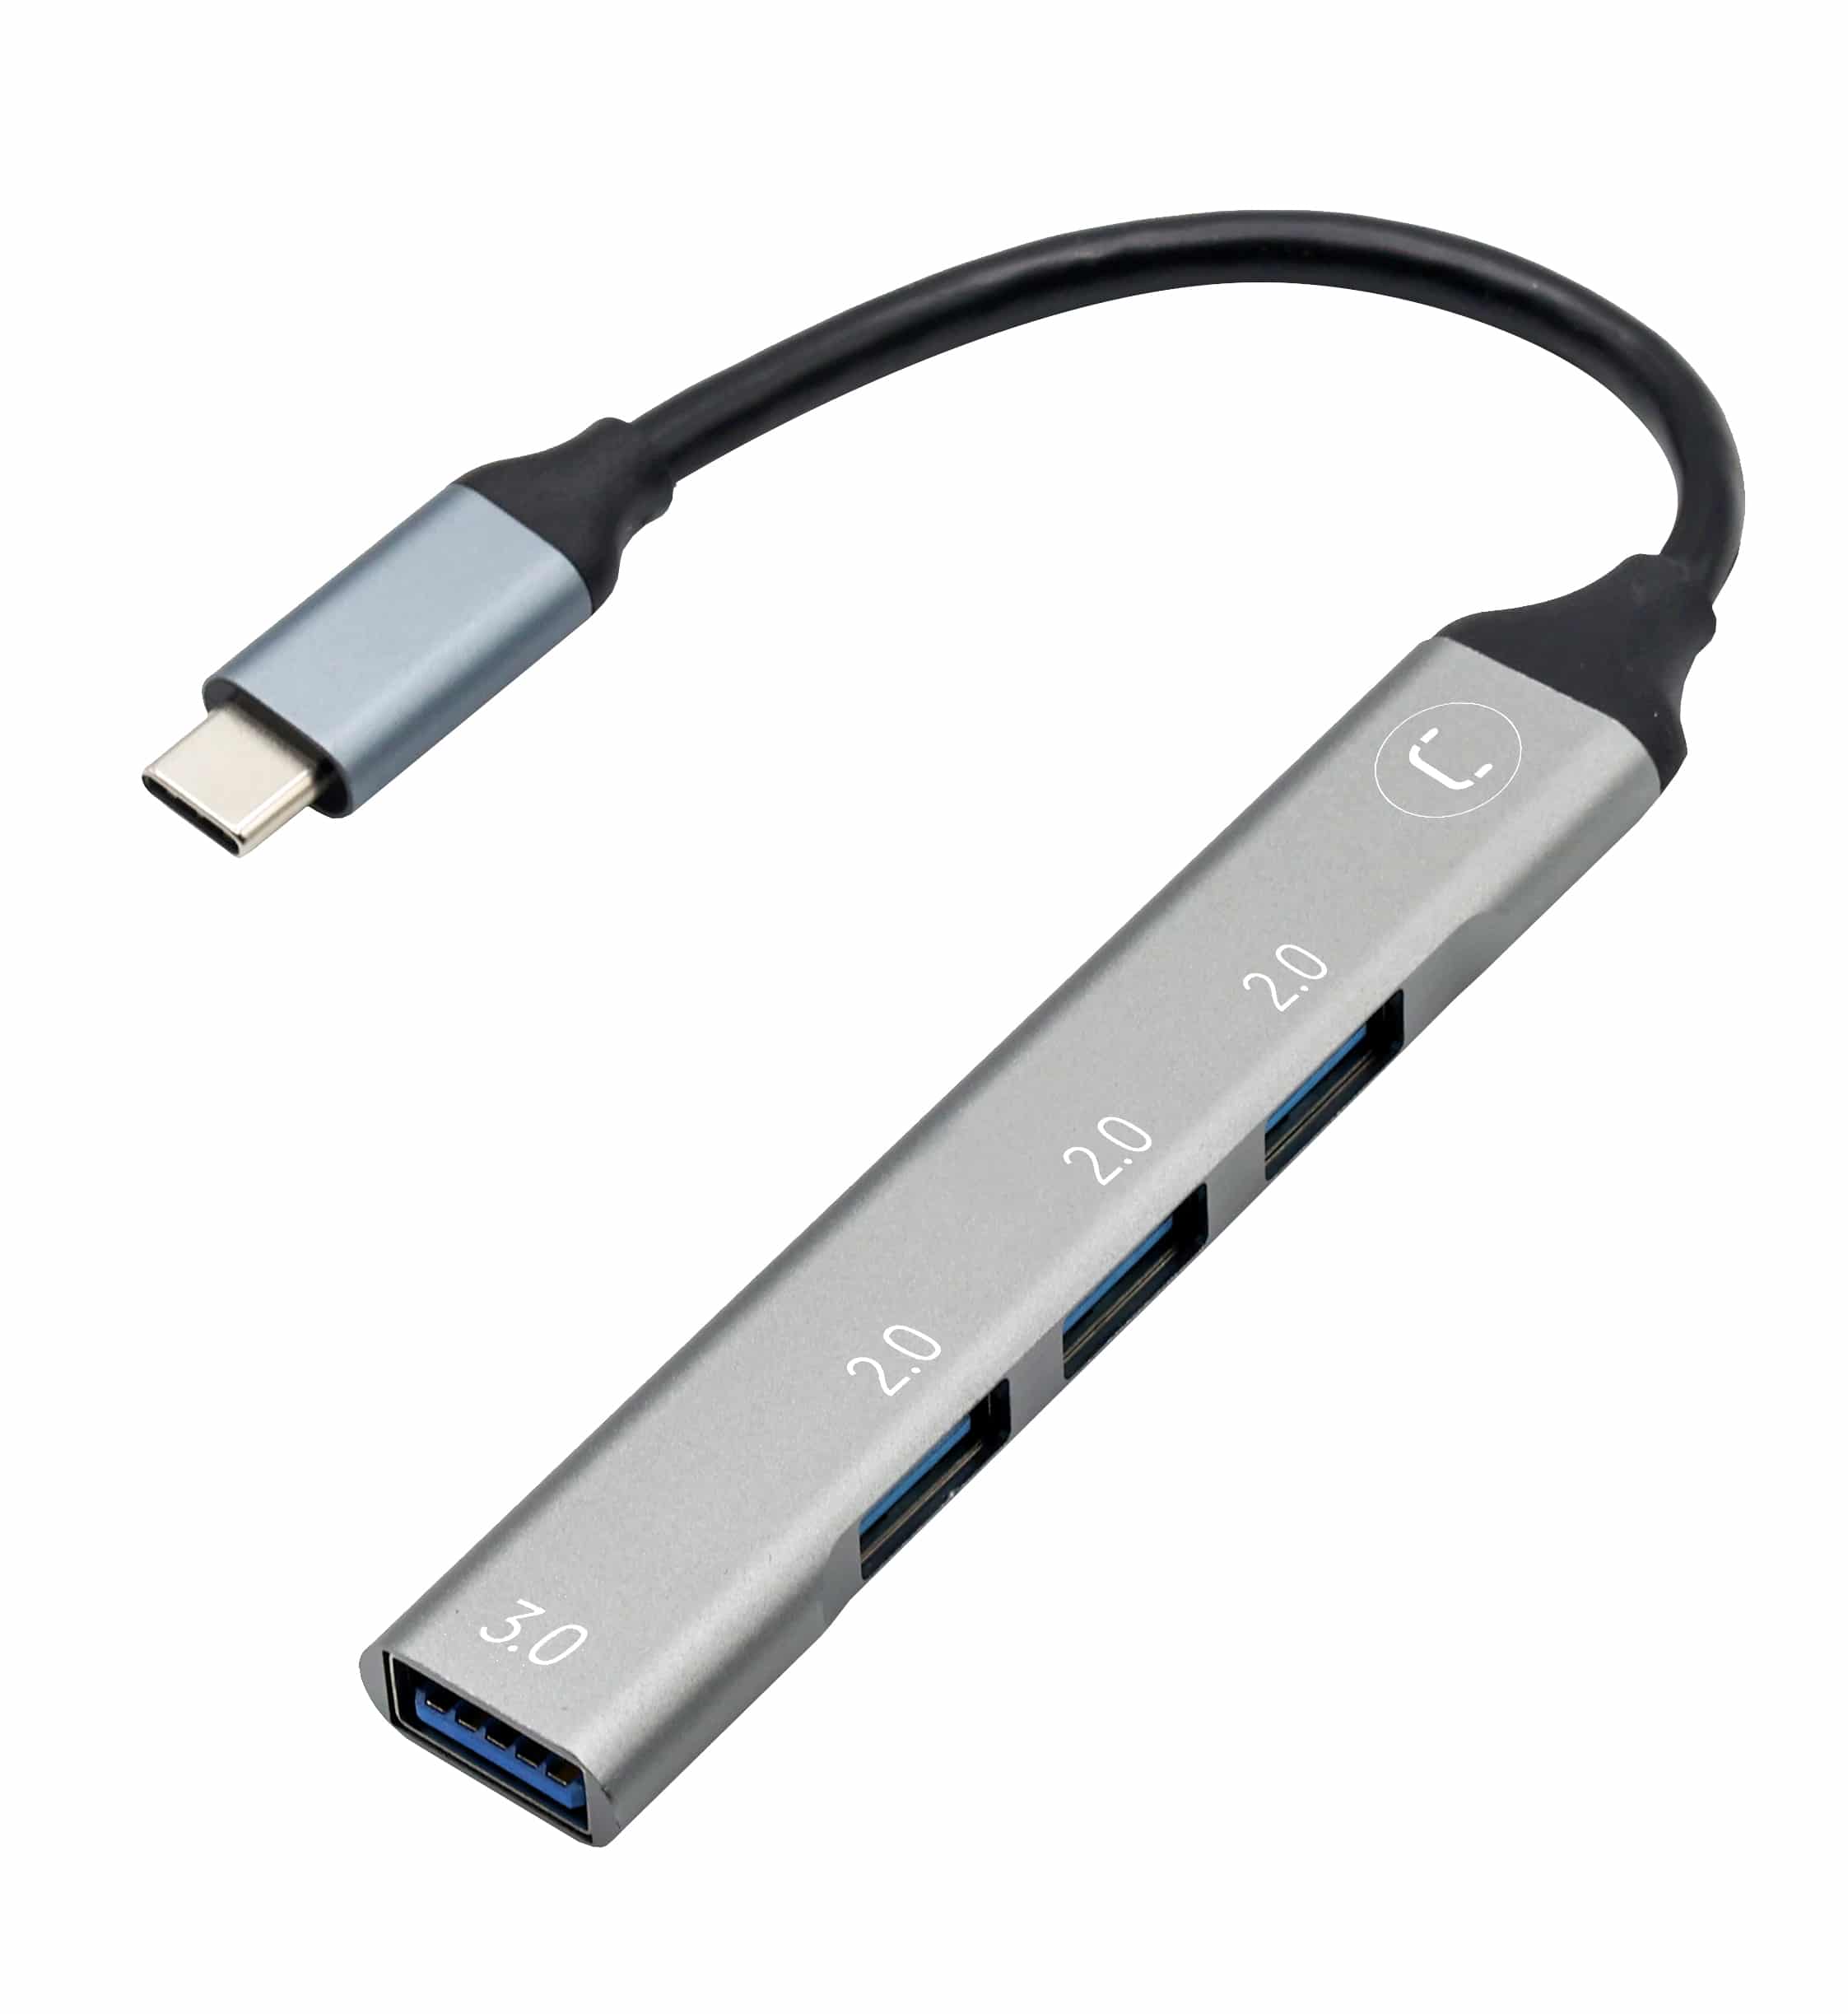 HUB USB-A (3.0) 4 PORTS, 4* USB-A